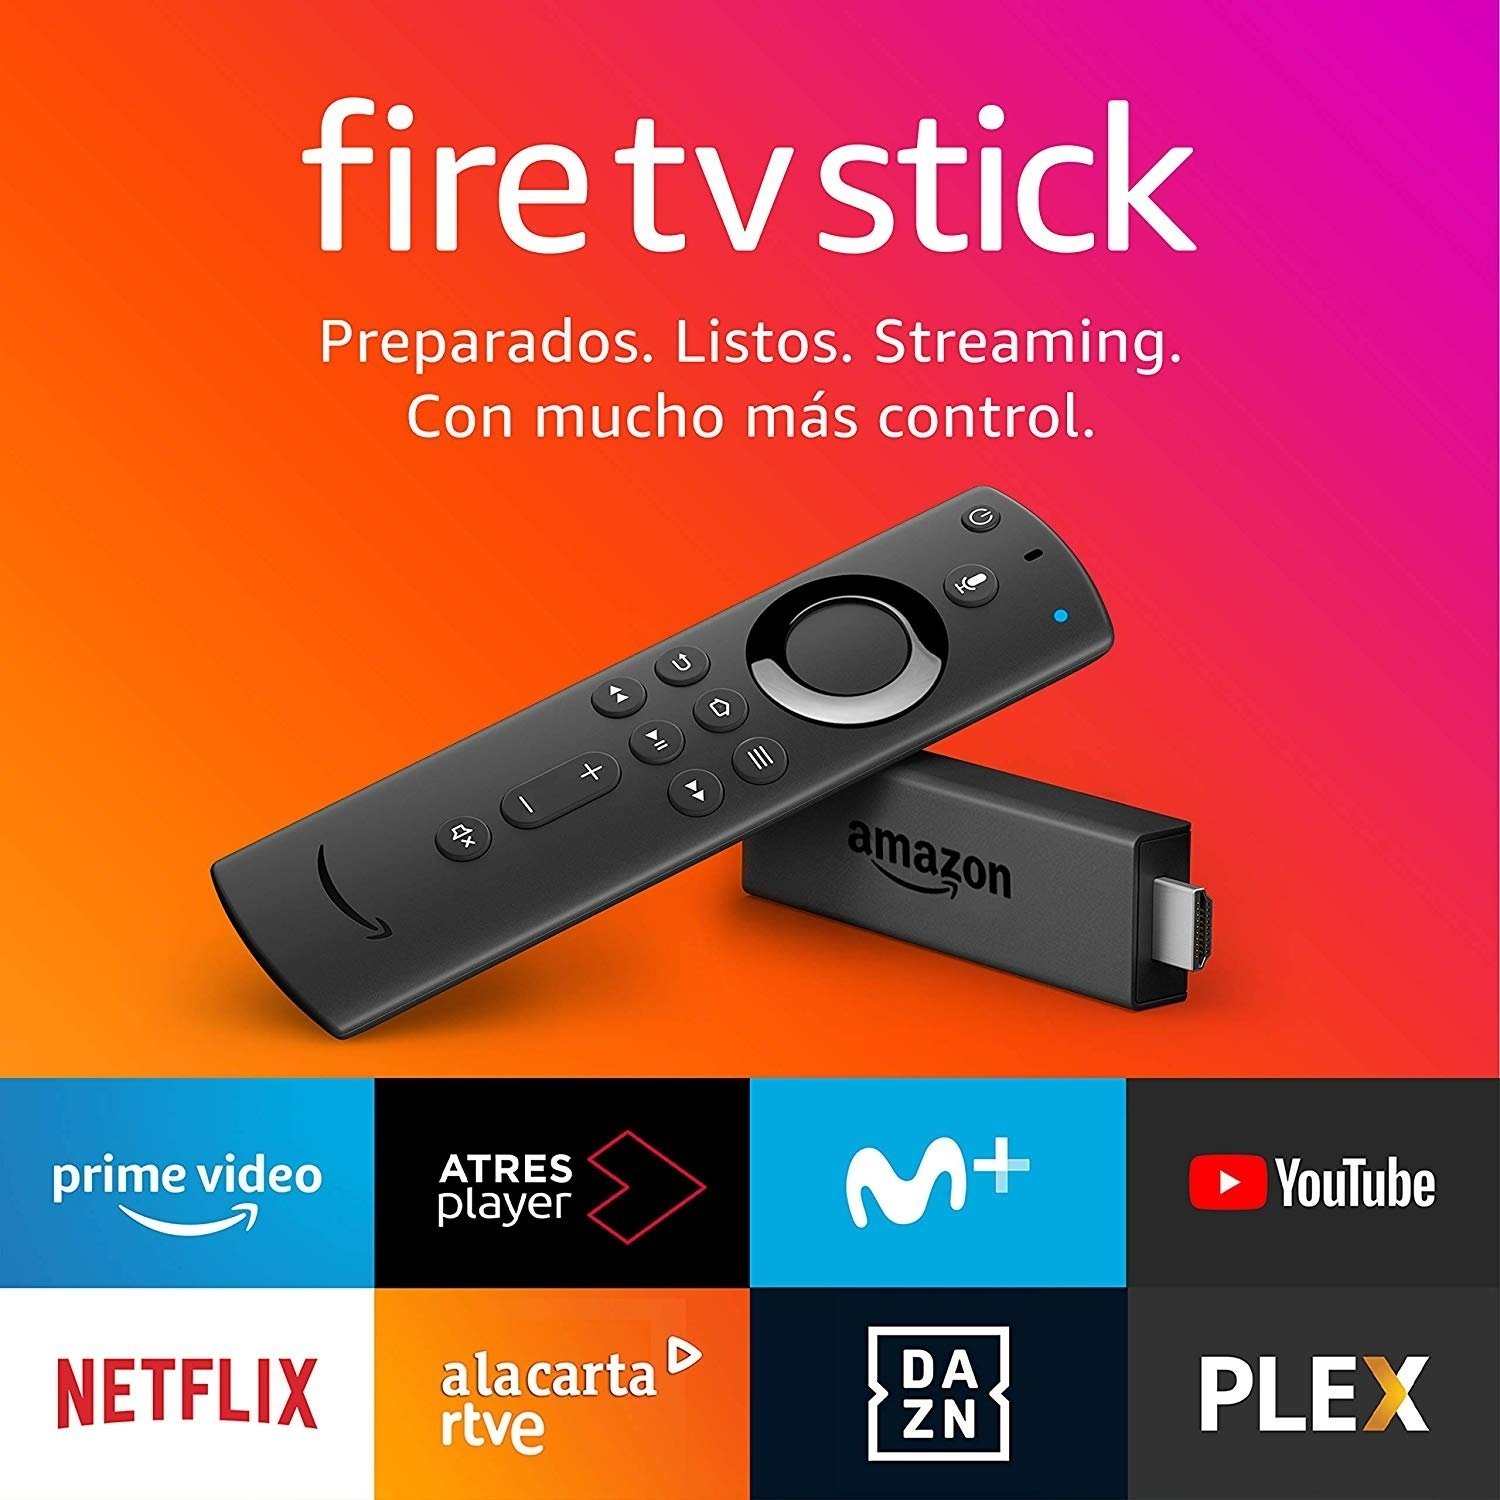 lanza en oferta dos nuevos modelos de Fire Stick TV